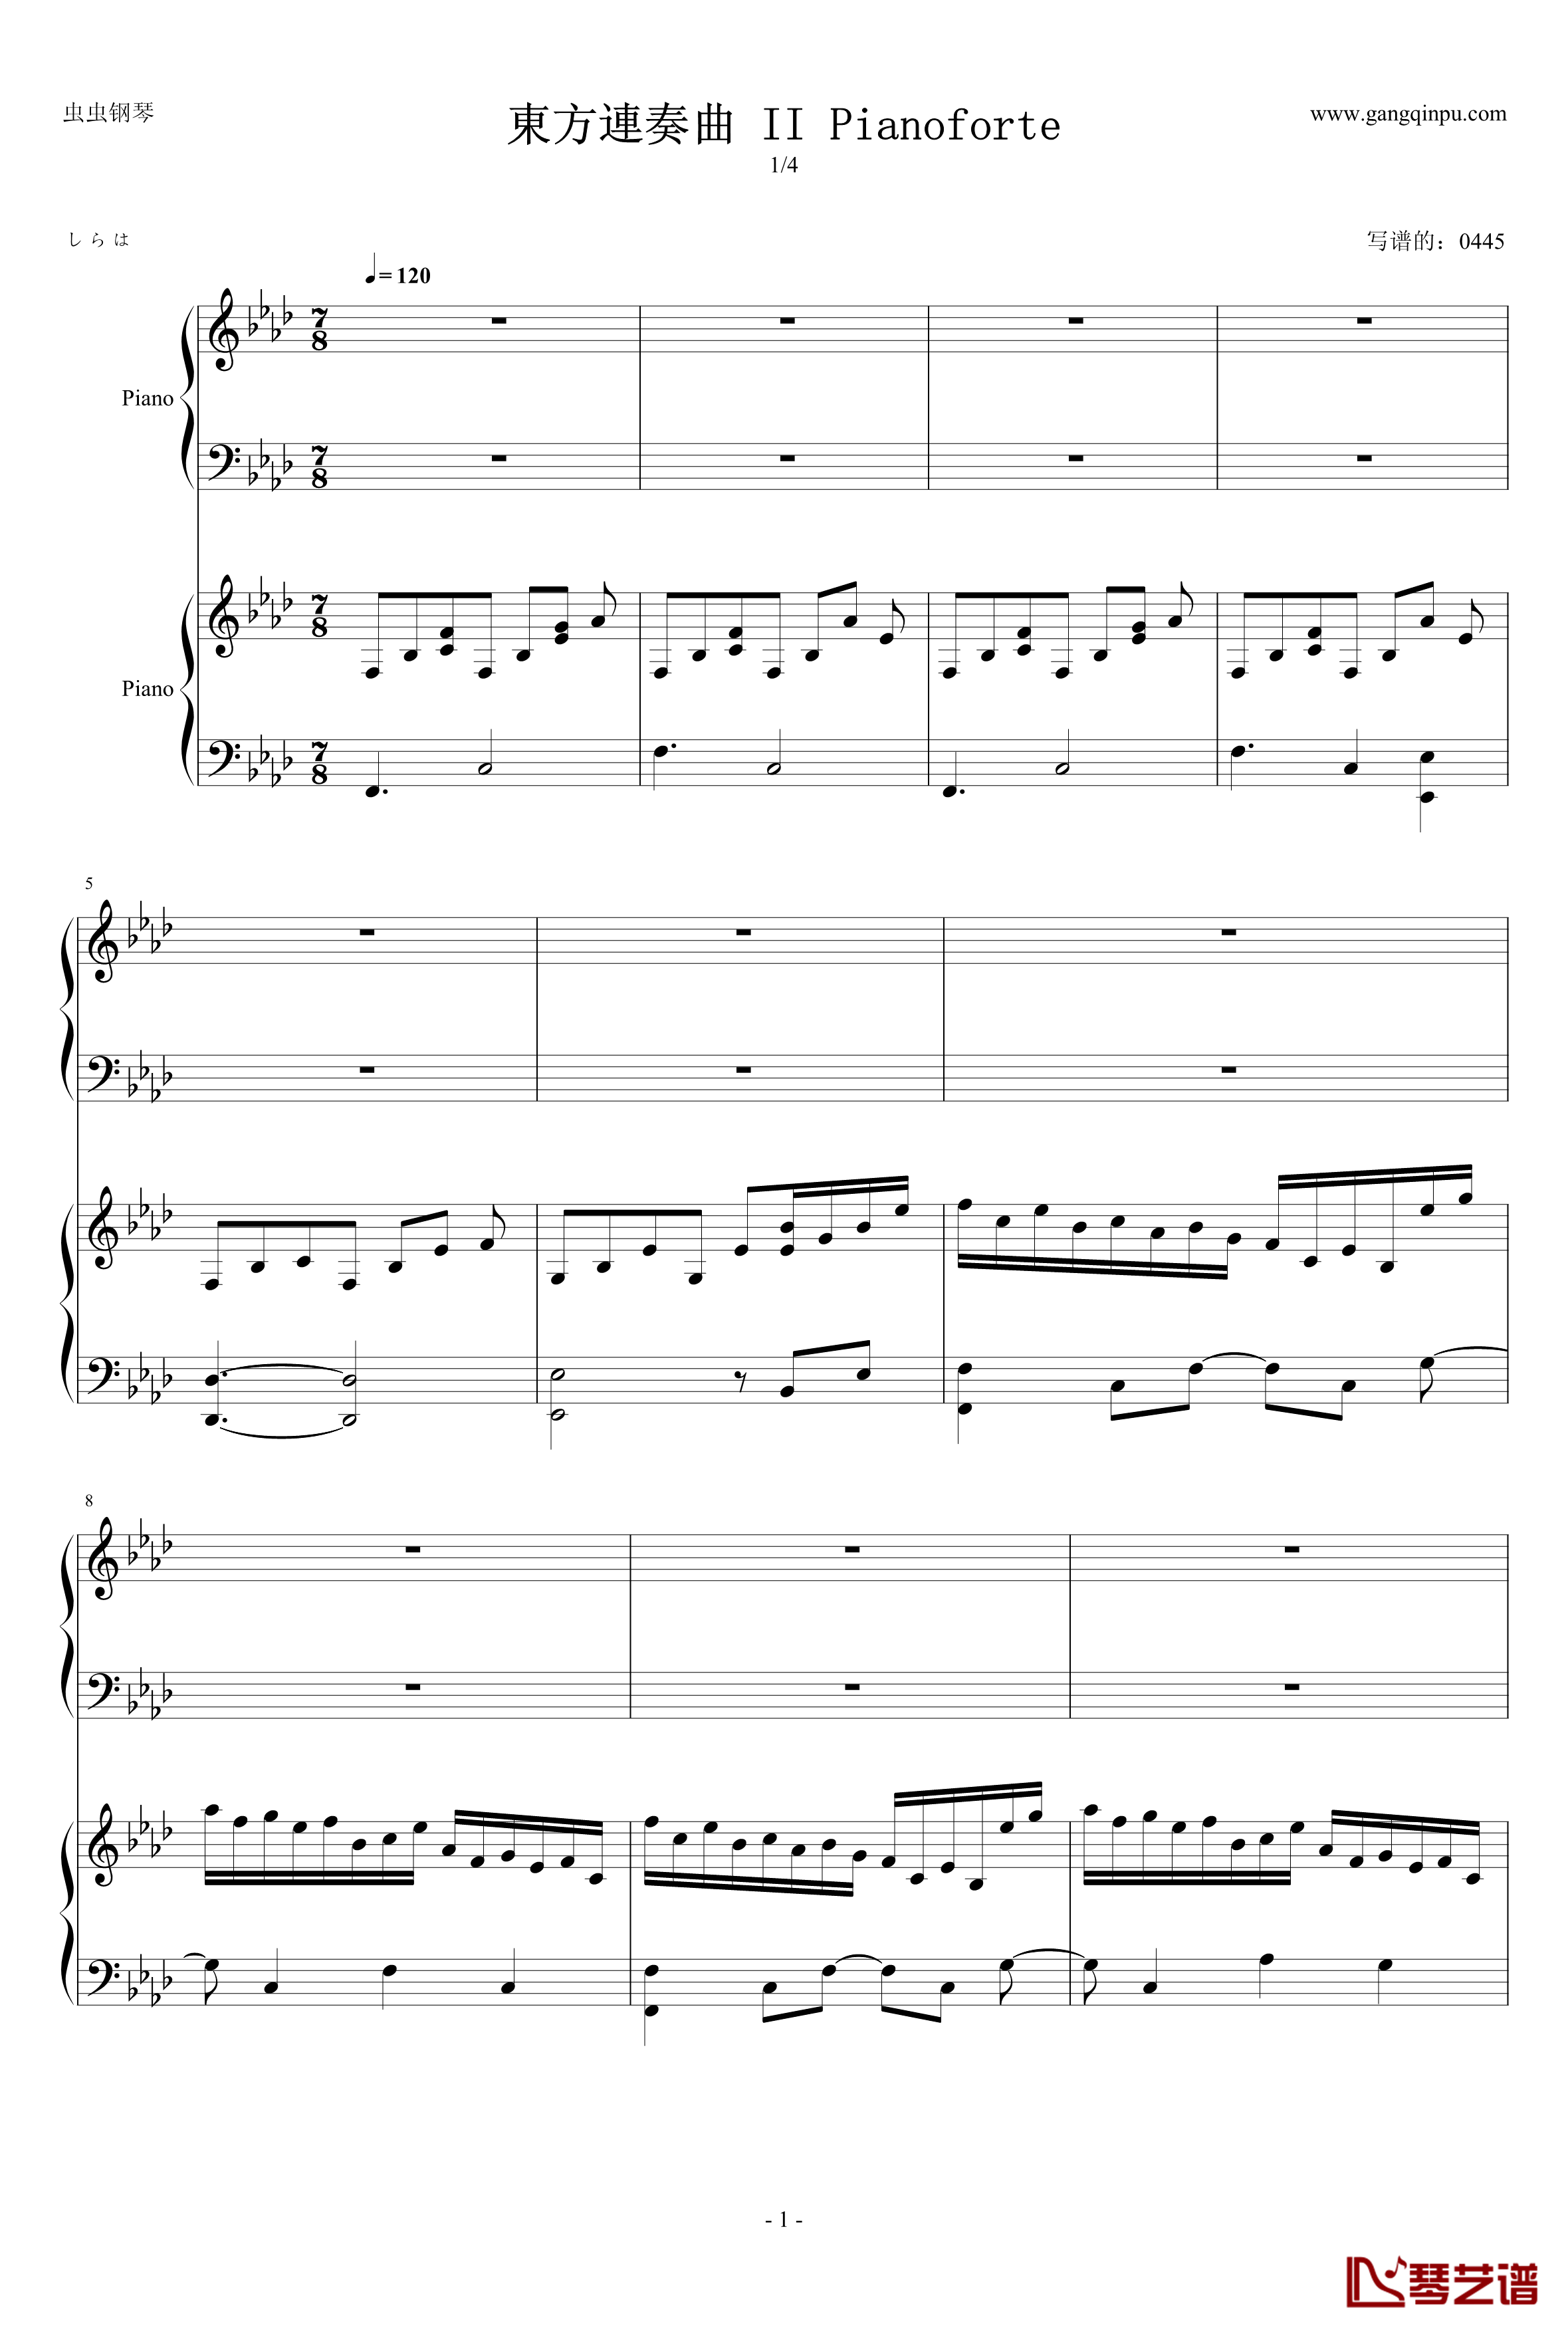 東方連奏曲II Pianoforte钢琴谱-第一部分-东方project1